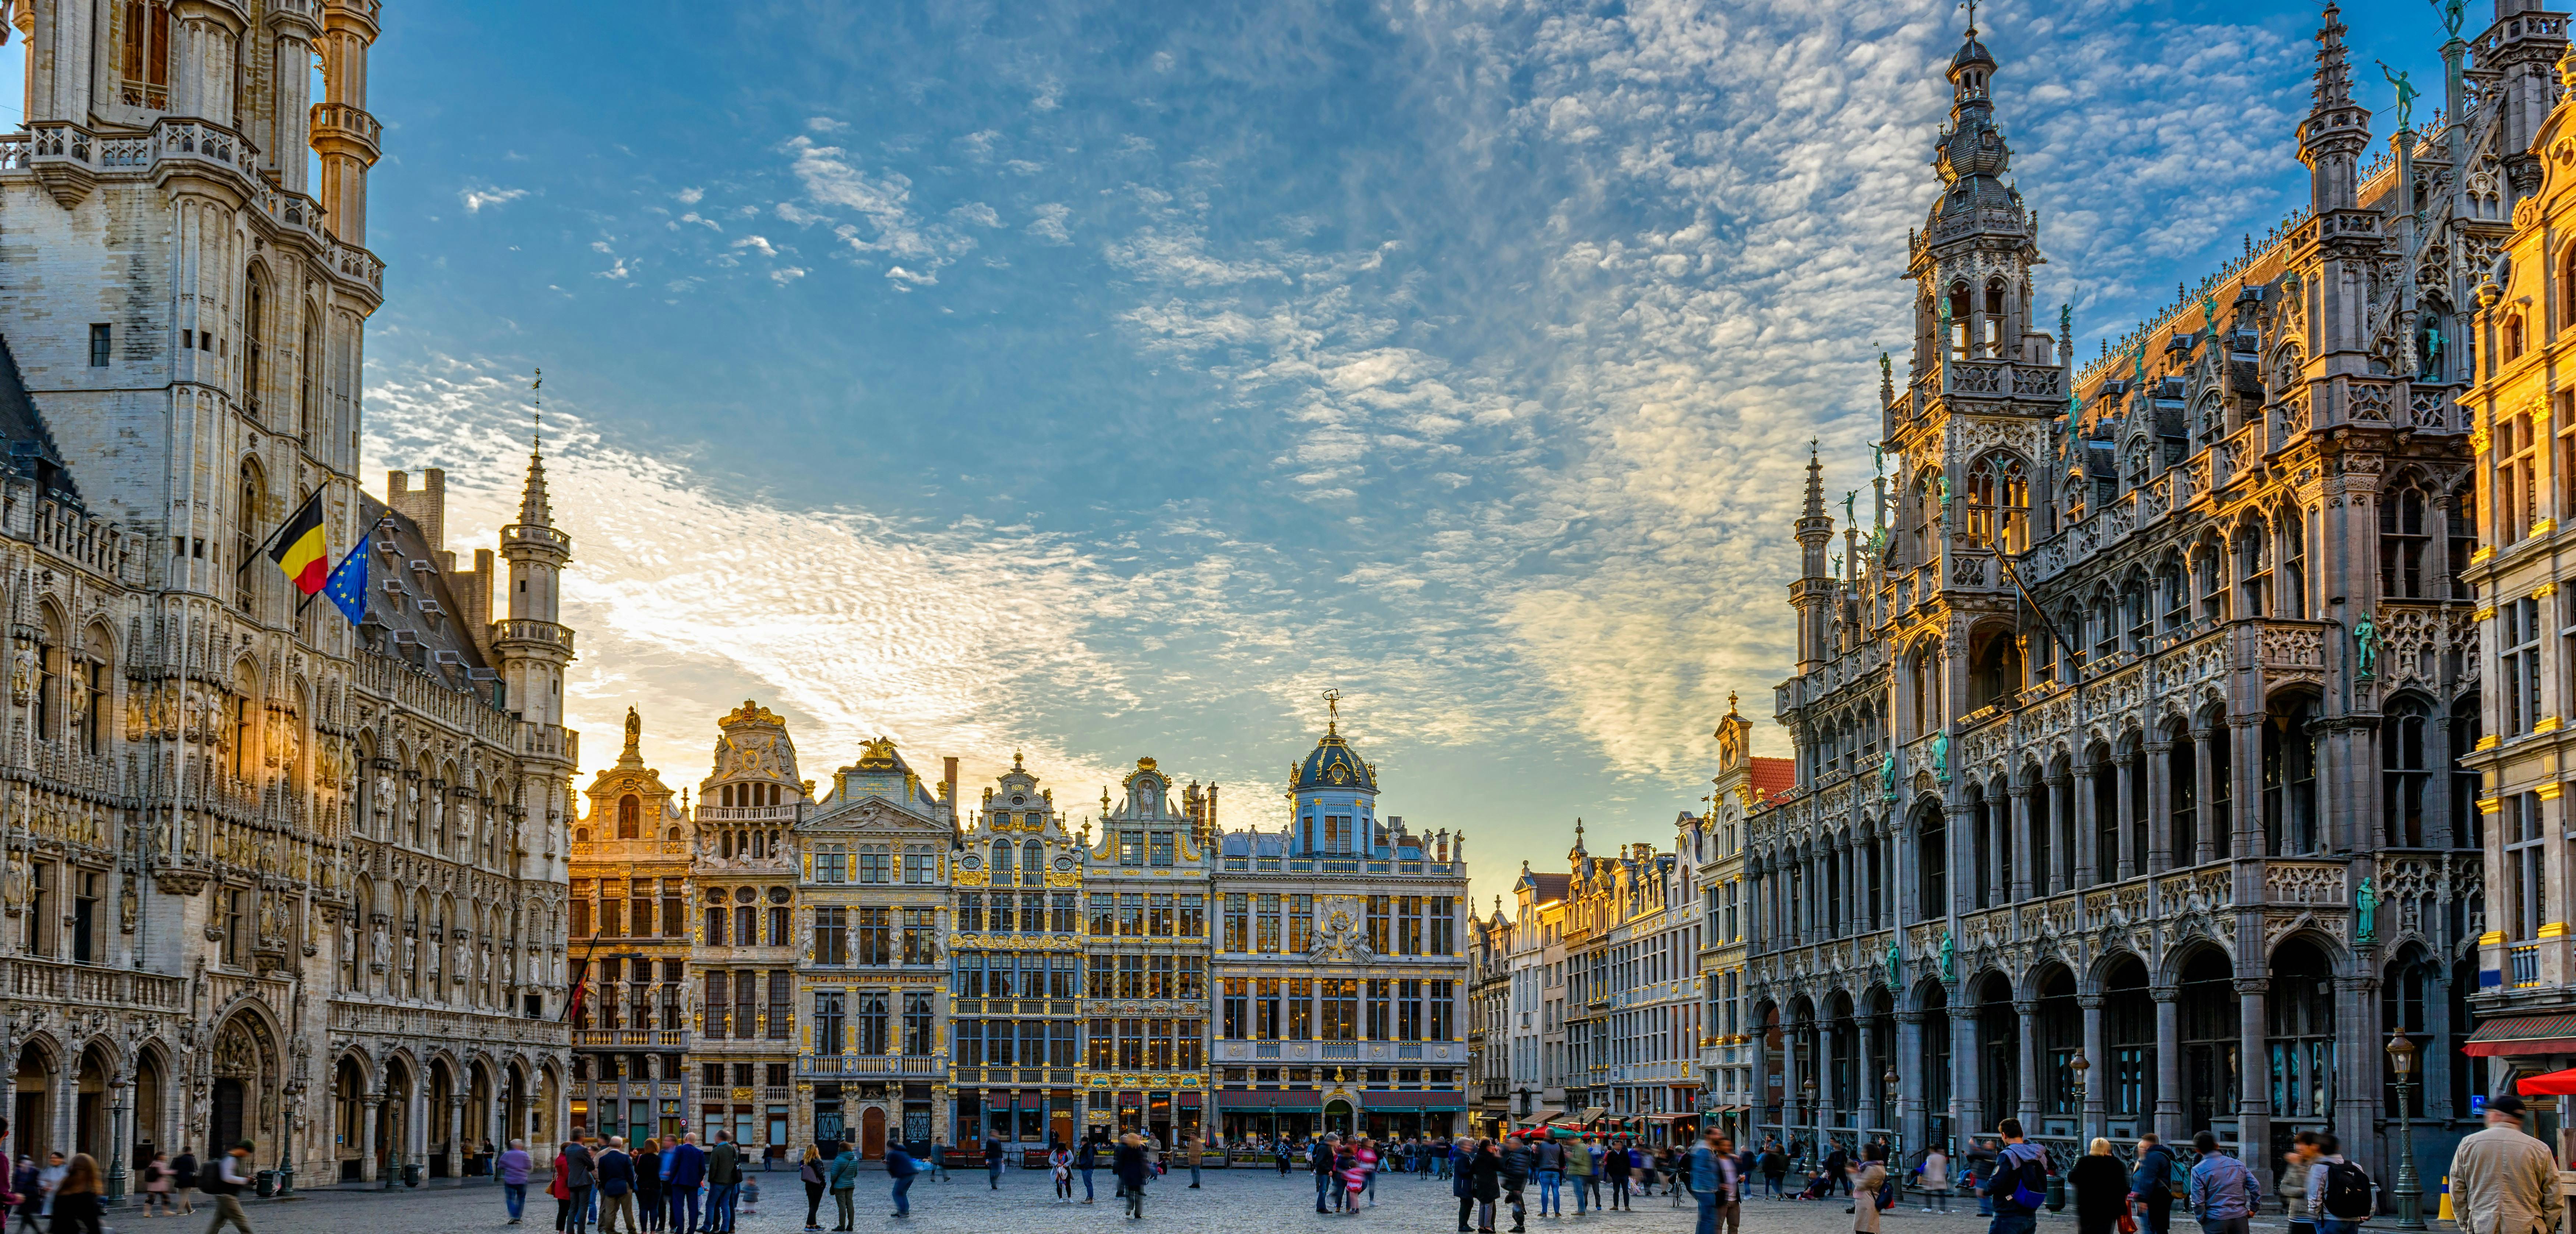 Escape Tour zelfgeleid, interactief stadsspel in Brussel